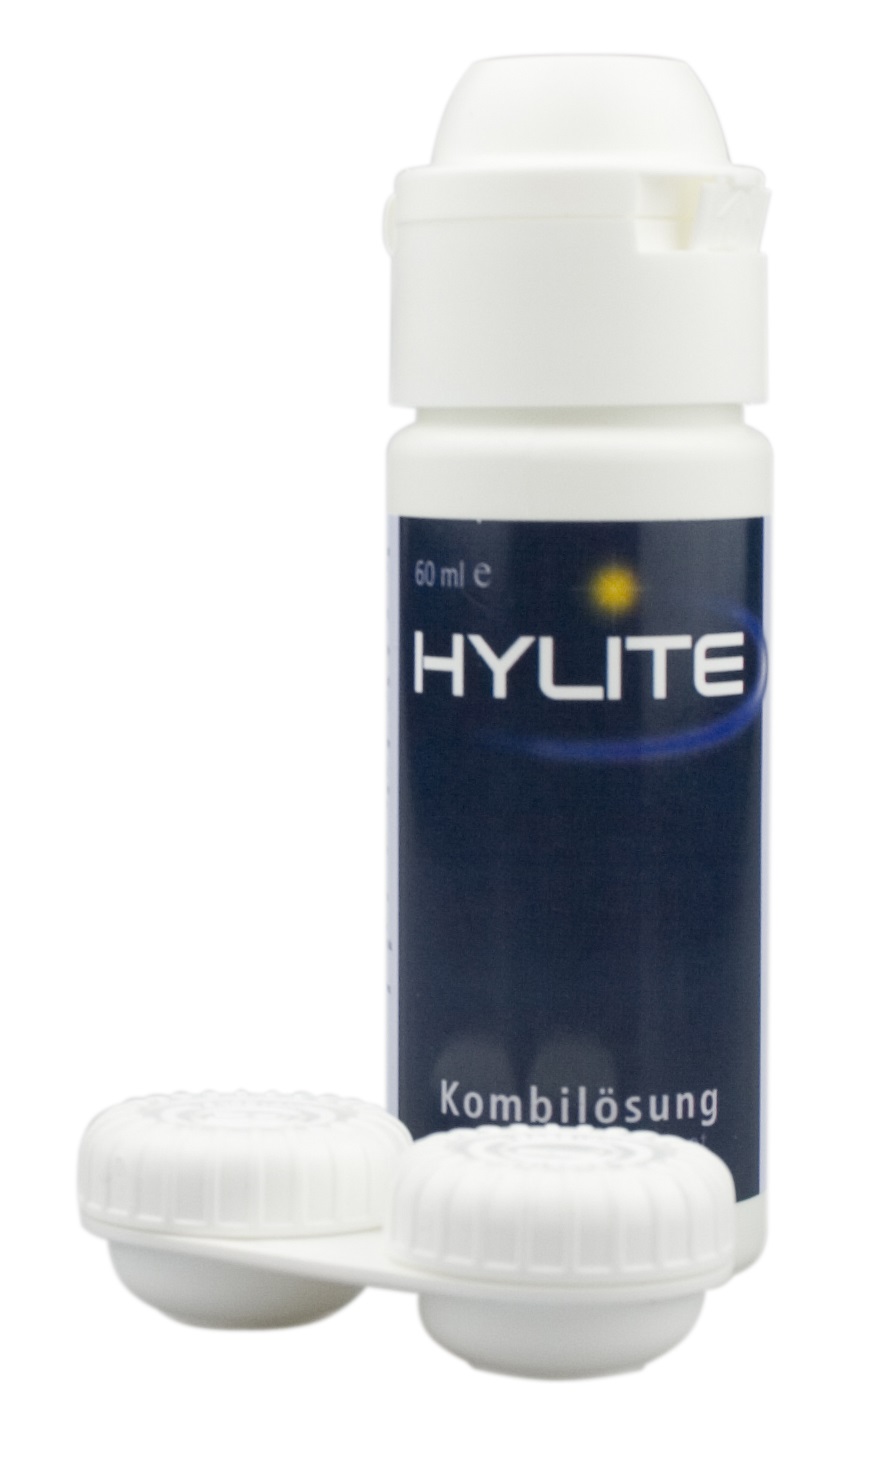 HYLITE Kombilösung 60 ml/1 Behälter